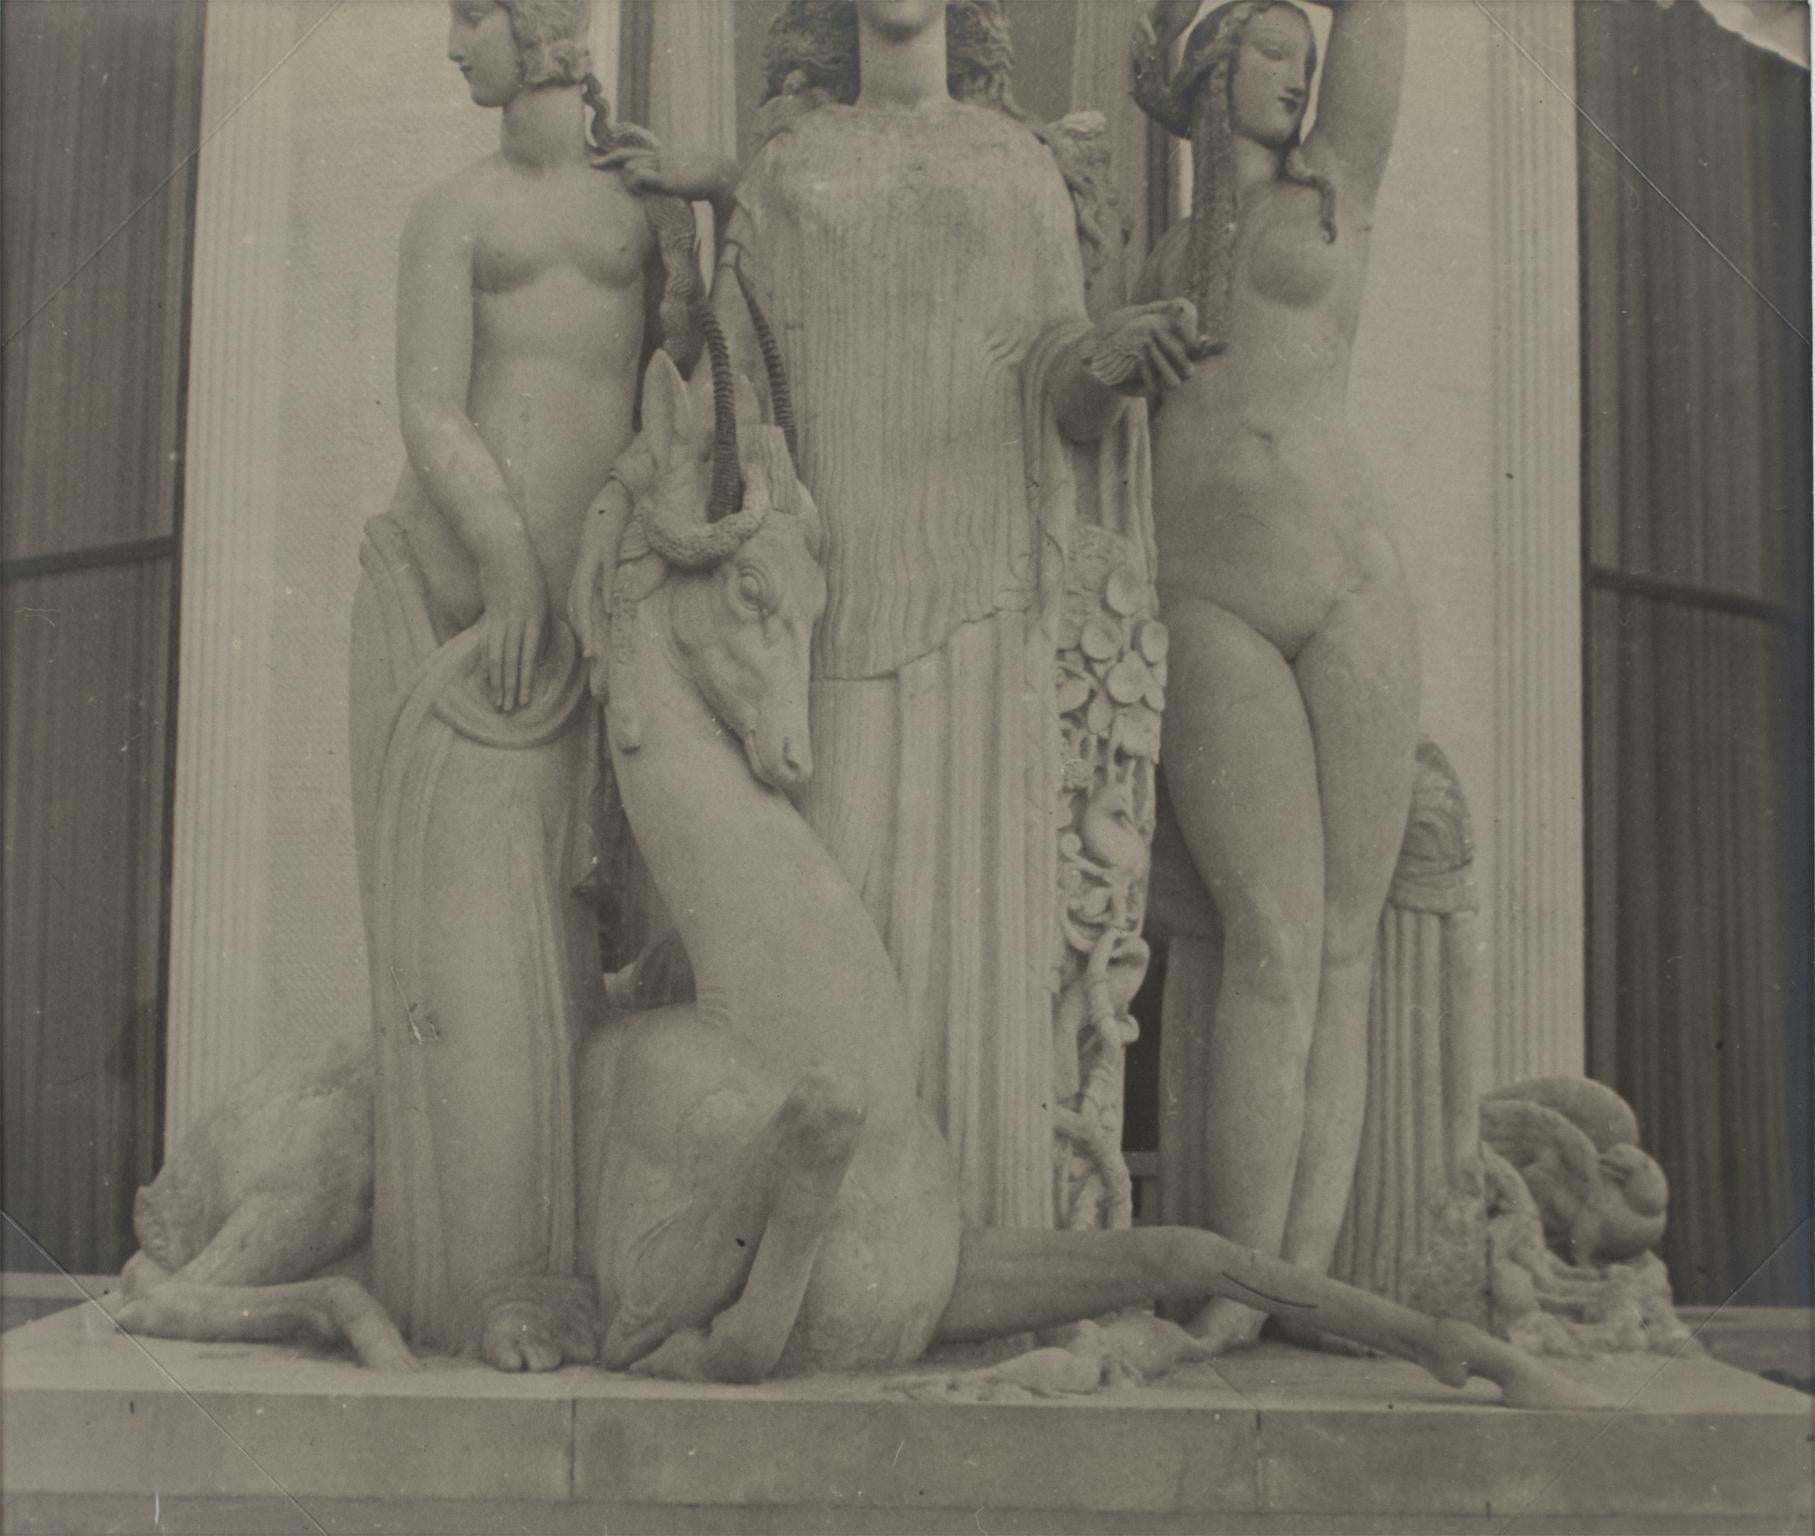 Paris, Decorative Art Exhibition 1925 The Ruhlmann Pavilion, B and W Photography